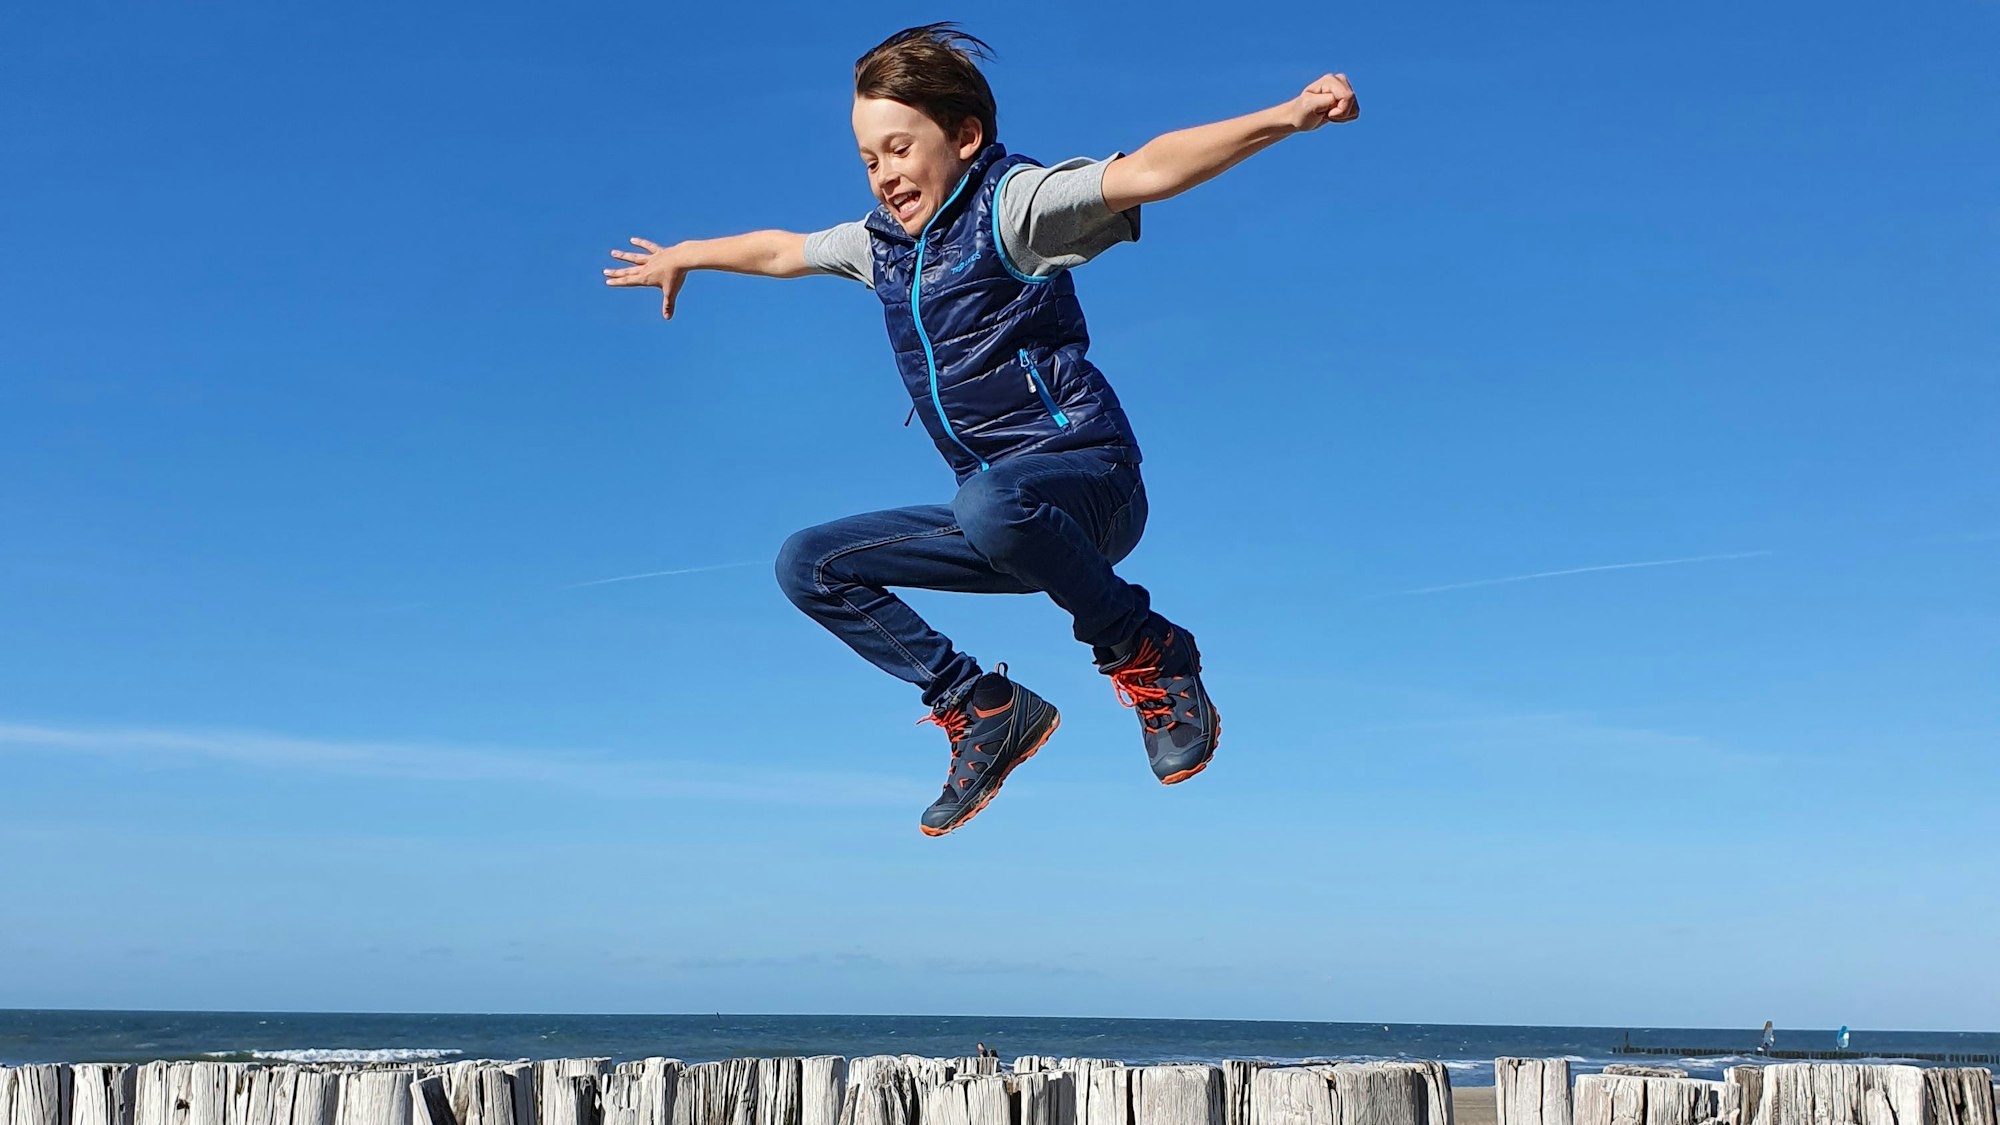 Ein Junge springt über Hölzer an einem Strand vor blauem Himmel und Meereshorizont.